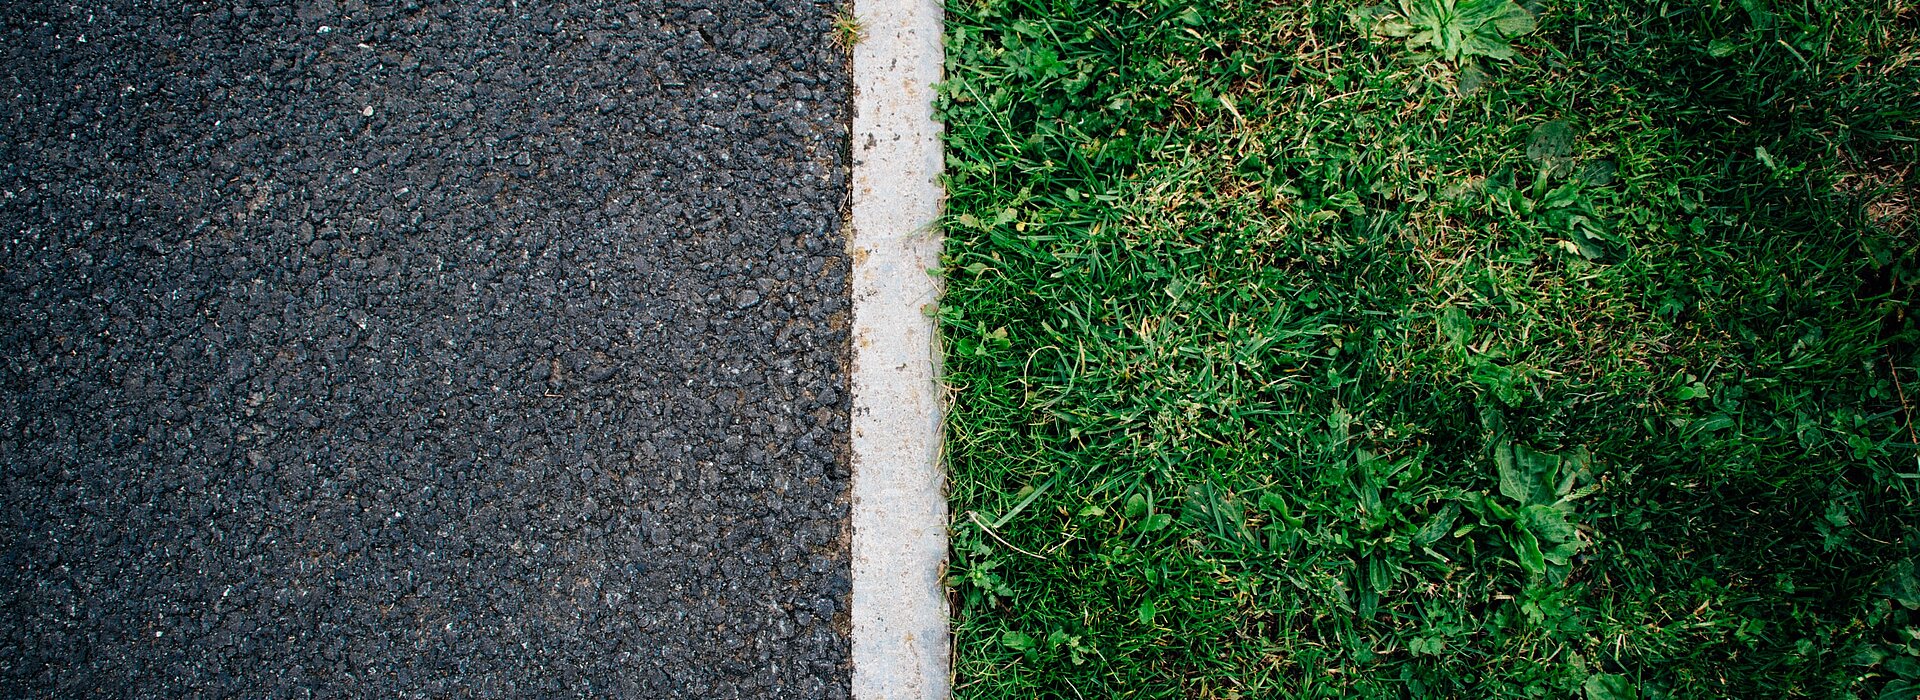 Do lado esquerdo, o asfalto. Do lado direito, a grama. Uma linha branca separa os dois. 